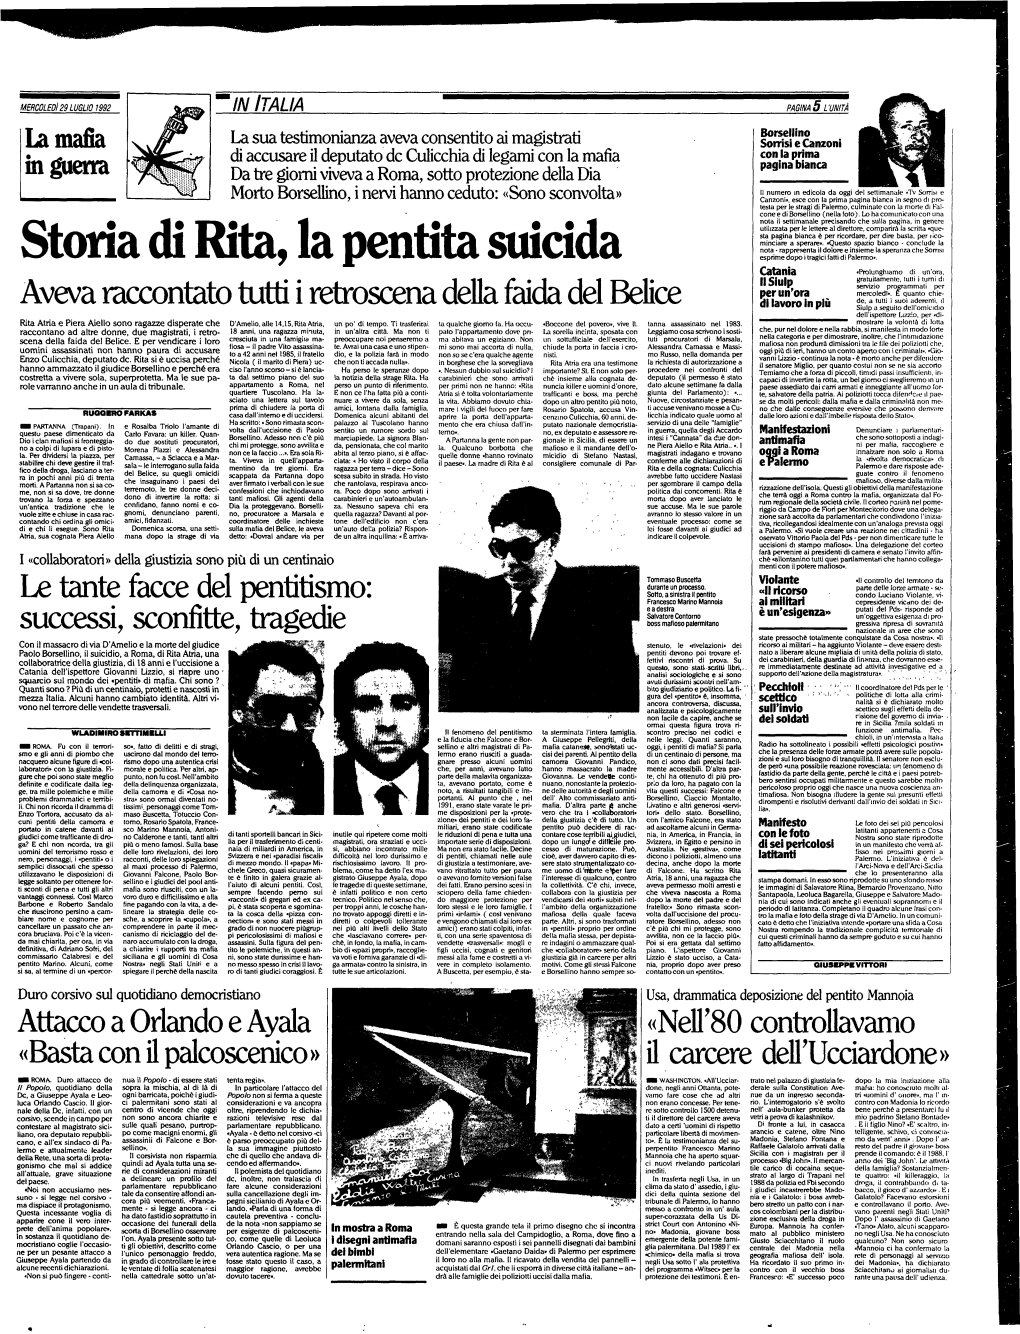 Storia Di Rita, La Pentita Suicida Esprime Dopo I Tragici Fatti Di Palermo»